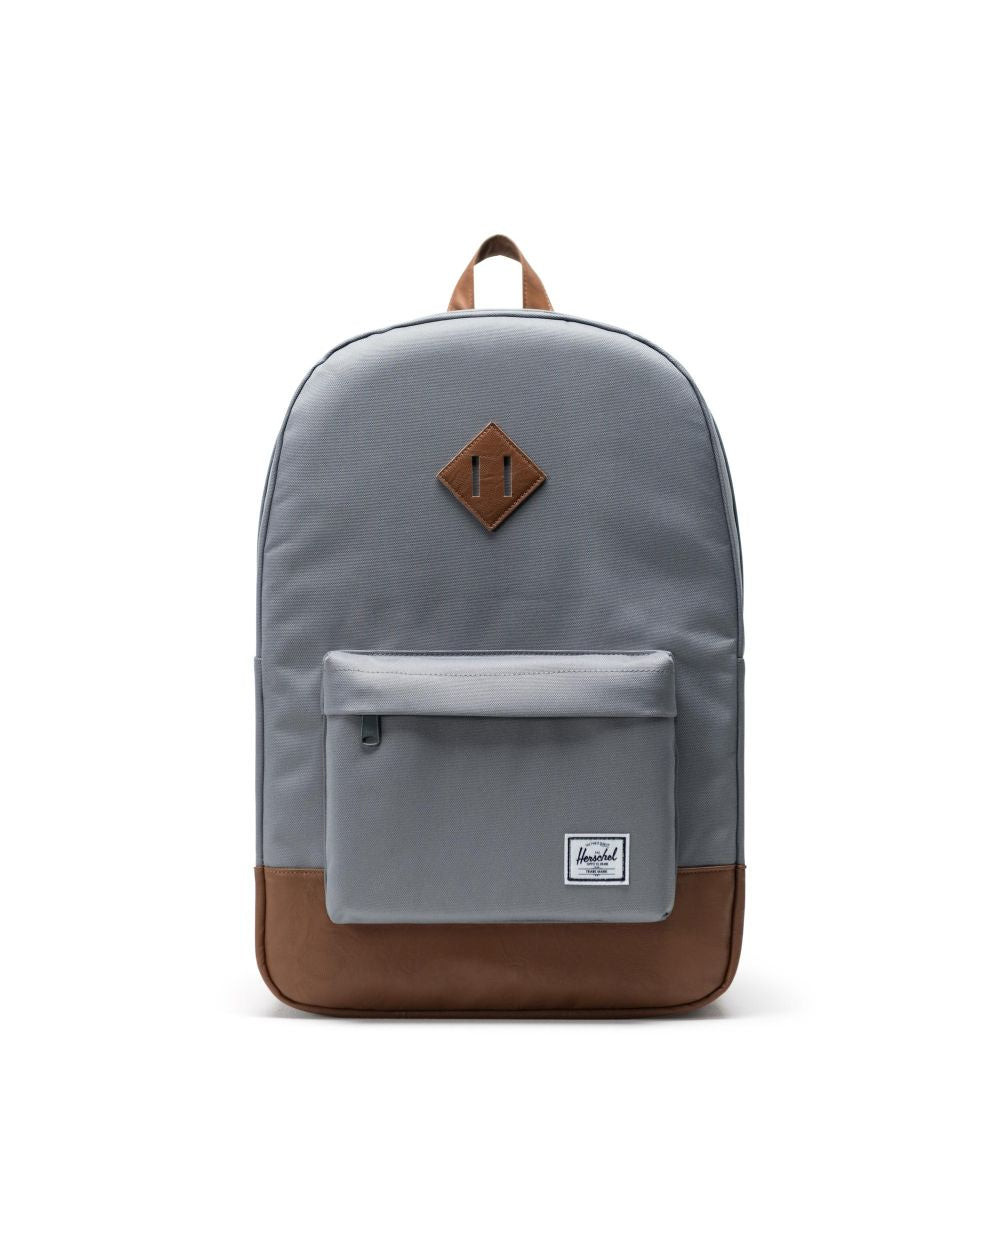 Herschel Heritage Backpack - Grey/Tan